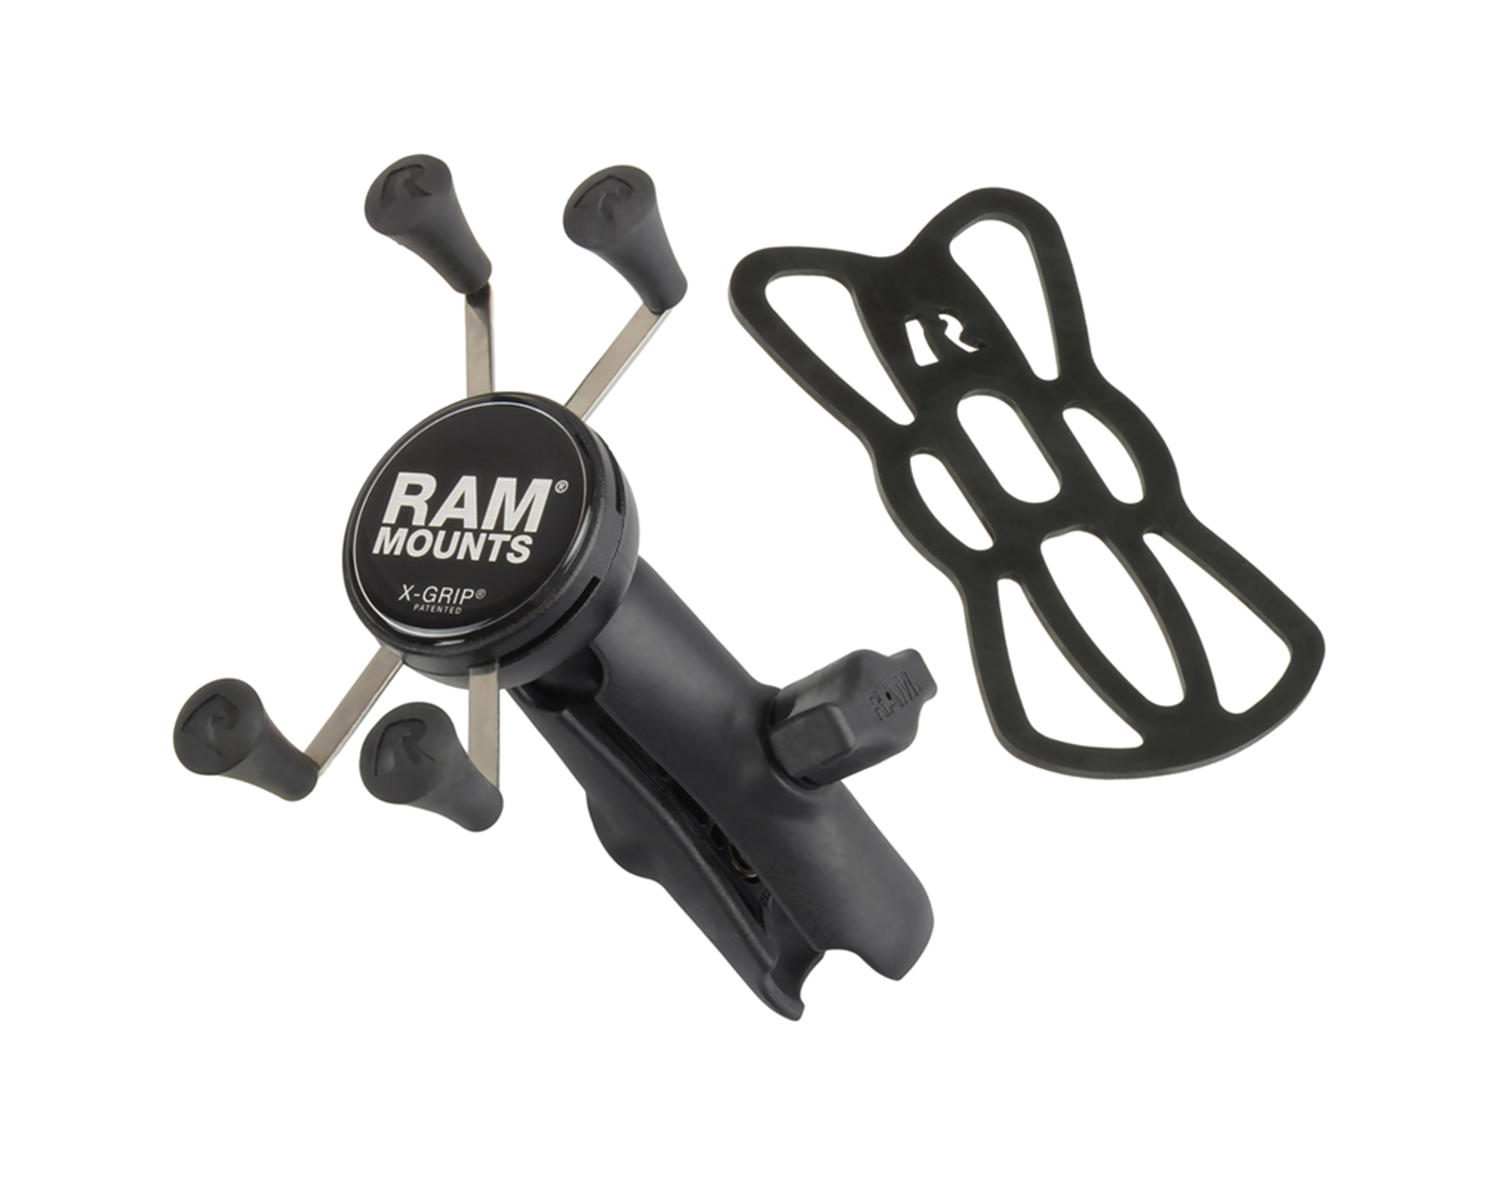 Ram mount. Ram x-Grip. Ram x-Grip с зарядкой. Ram Mounts держатели. Держатель для телефона Ram.